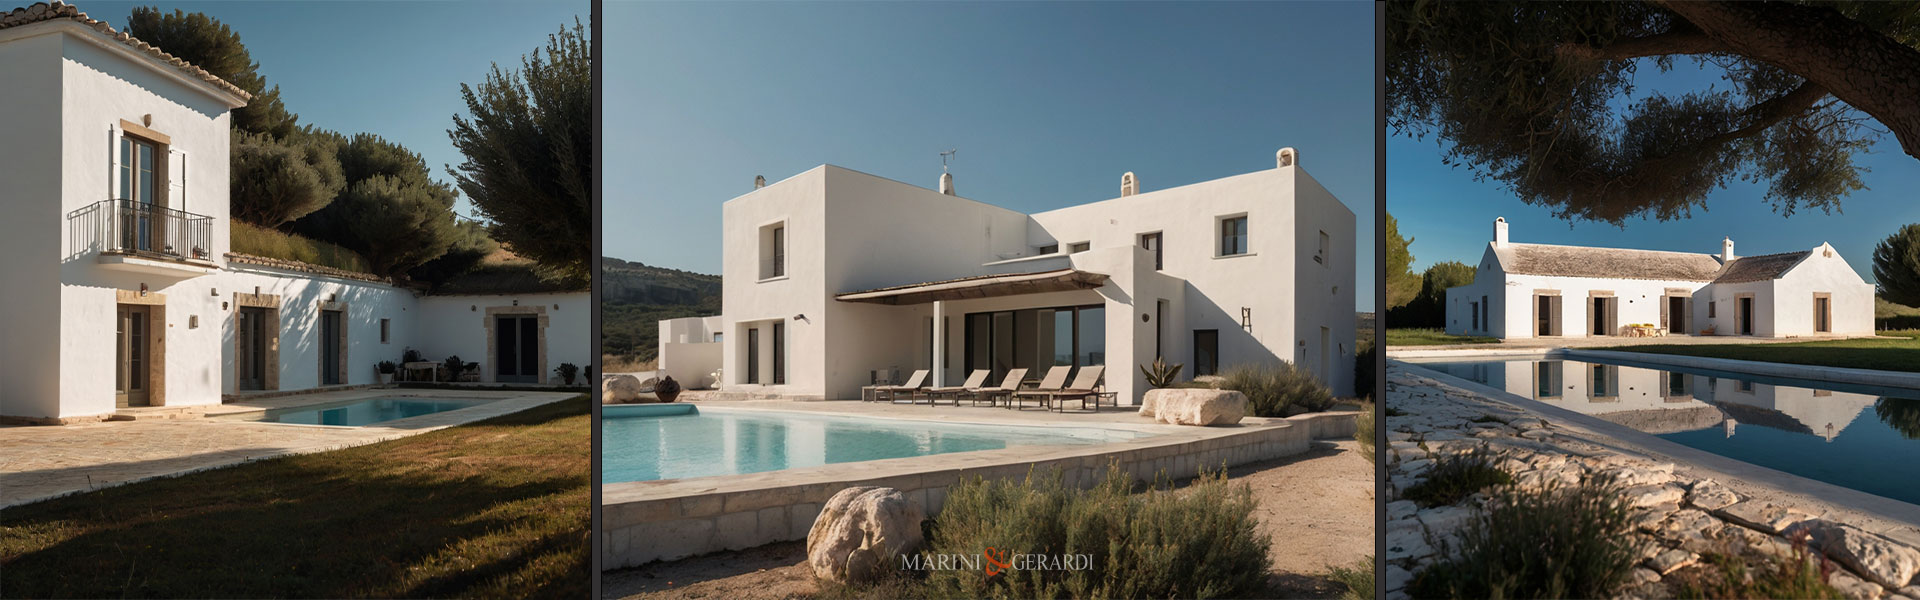 La casa mediterranea dei nostri sogni piscina veranda campagna